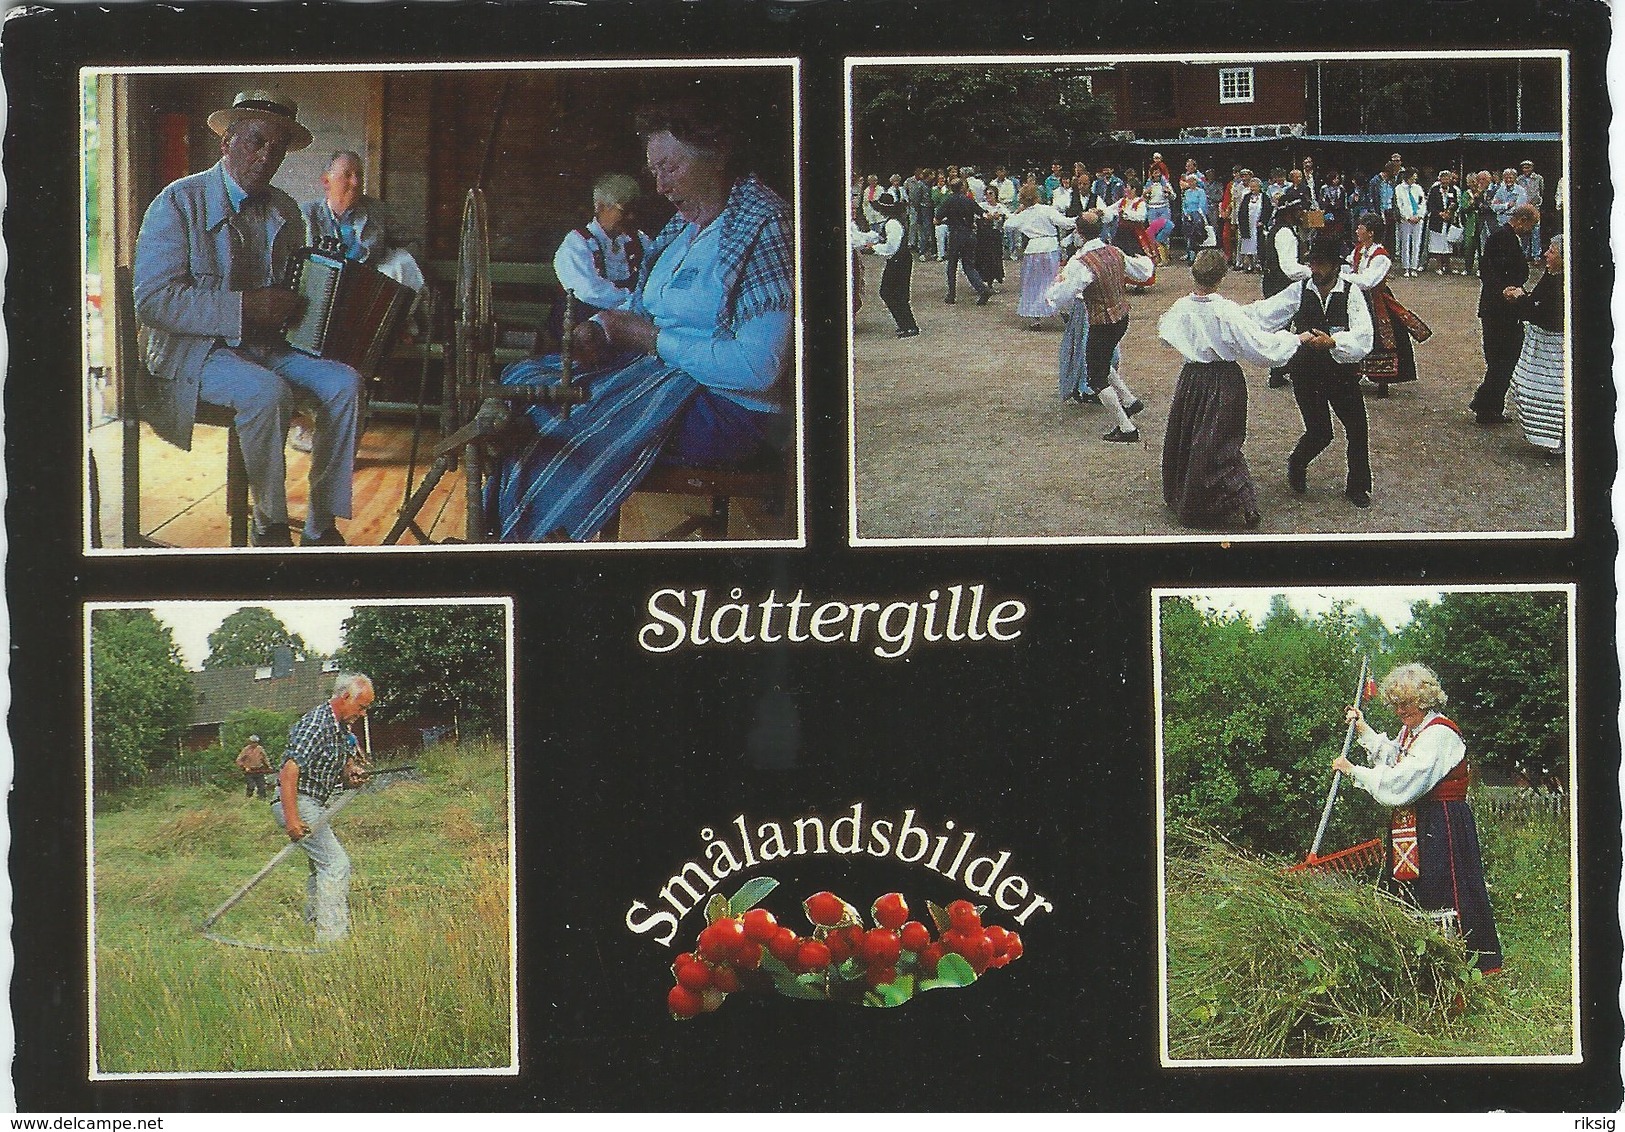 Sweden - Slåttergille. B-3156 - Sweden